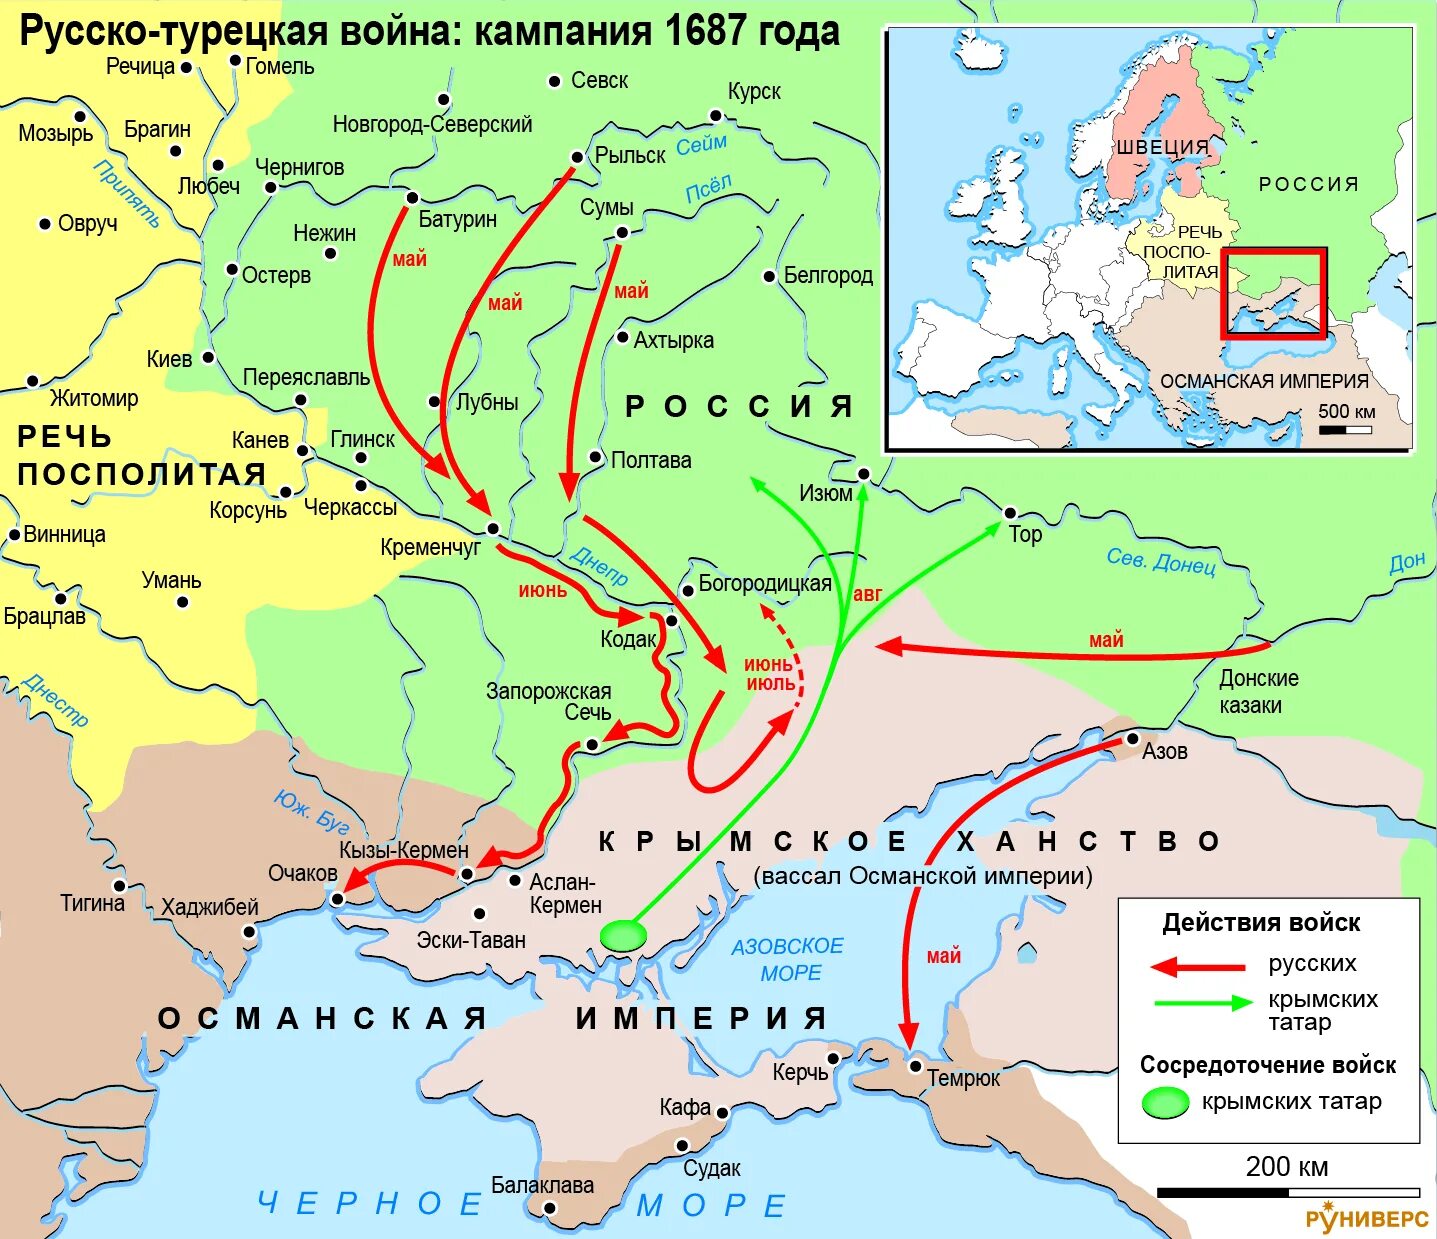 Крымские походы в. в. Голицына 1687 и 1689 гг.. Карта крымские походы 1687-1689.